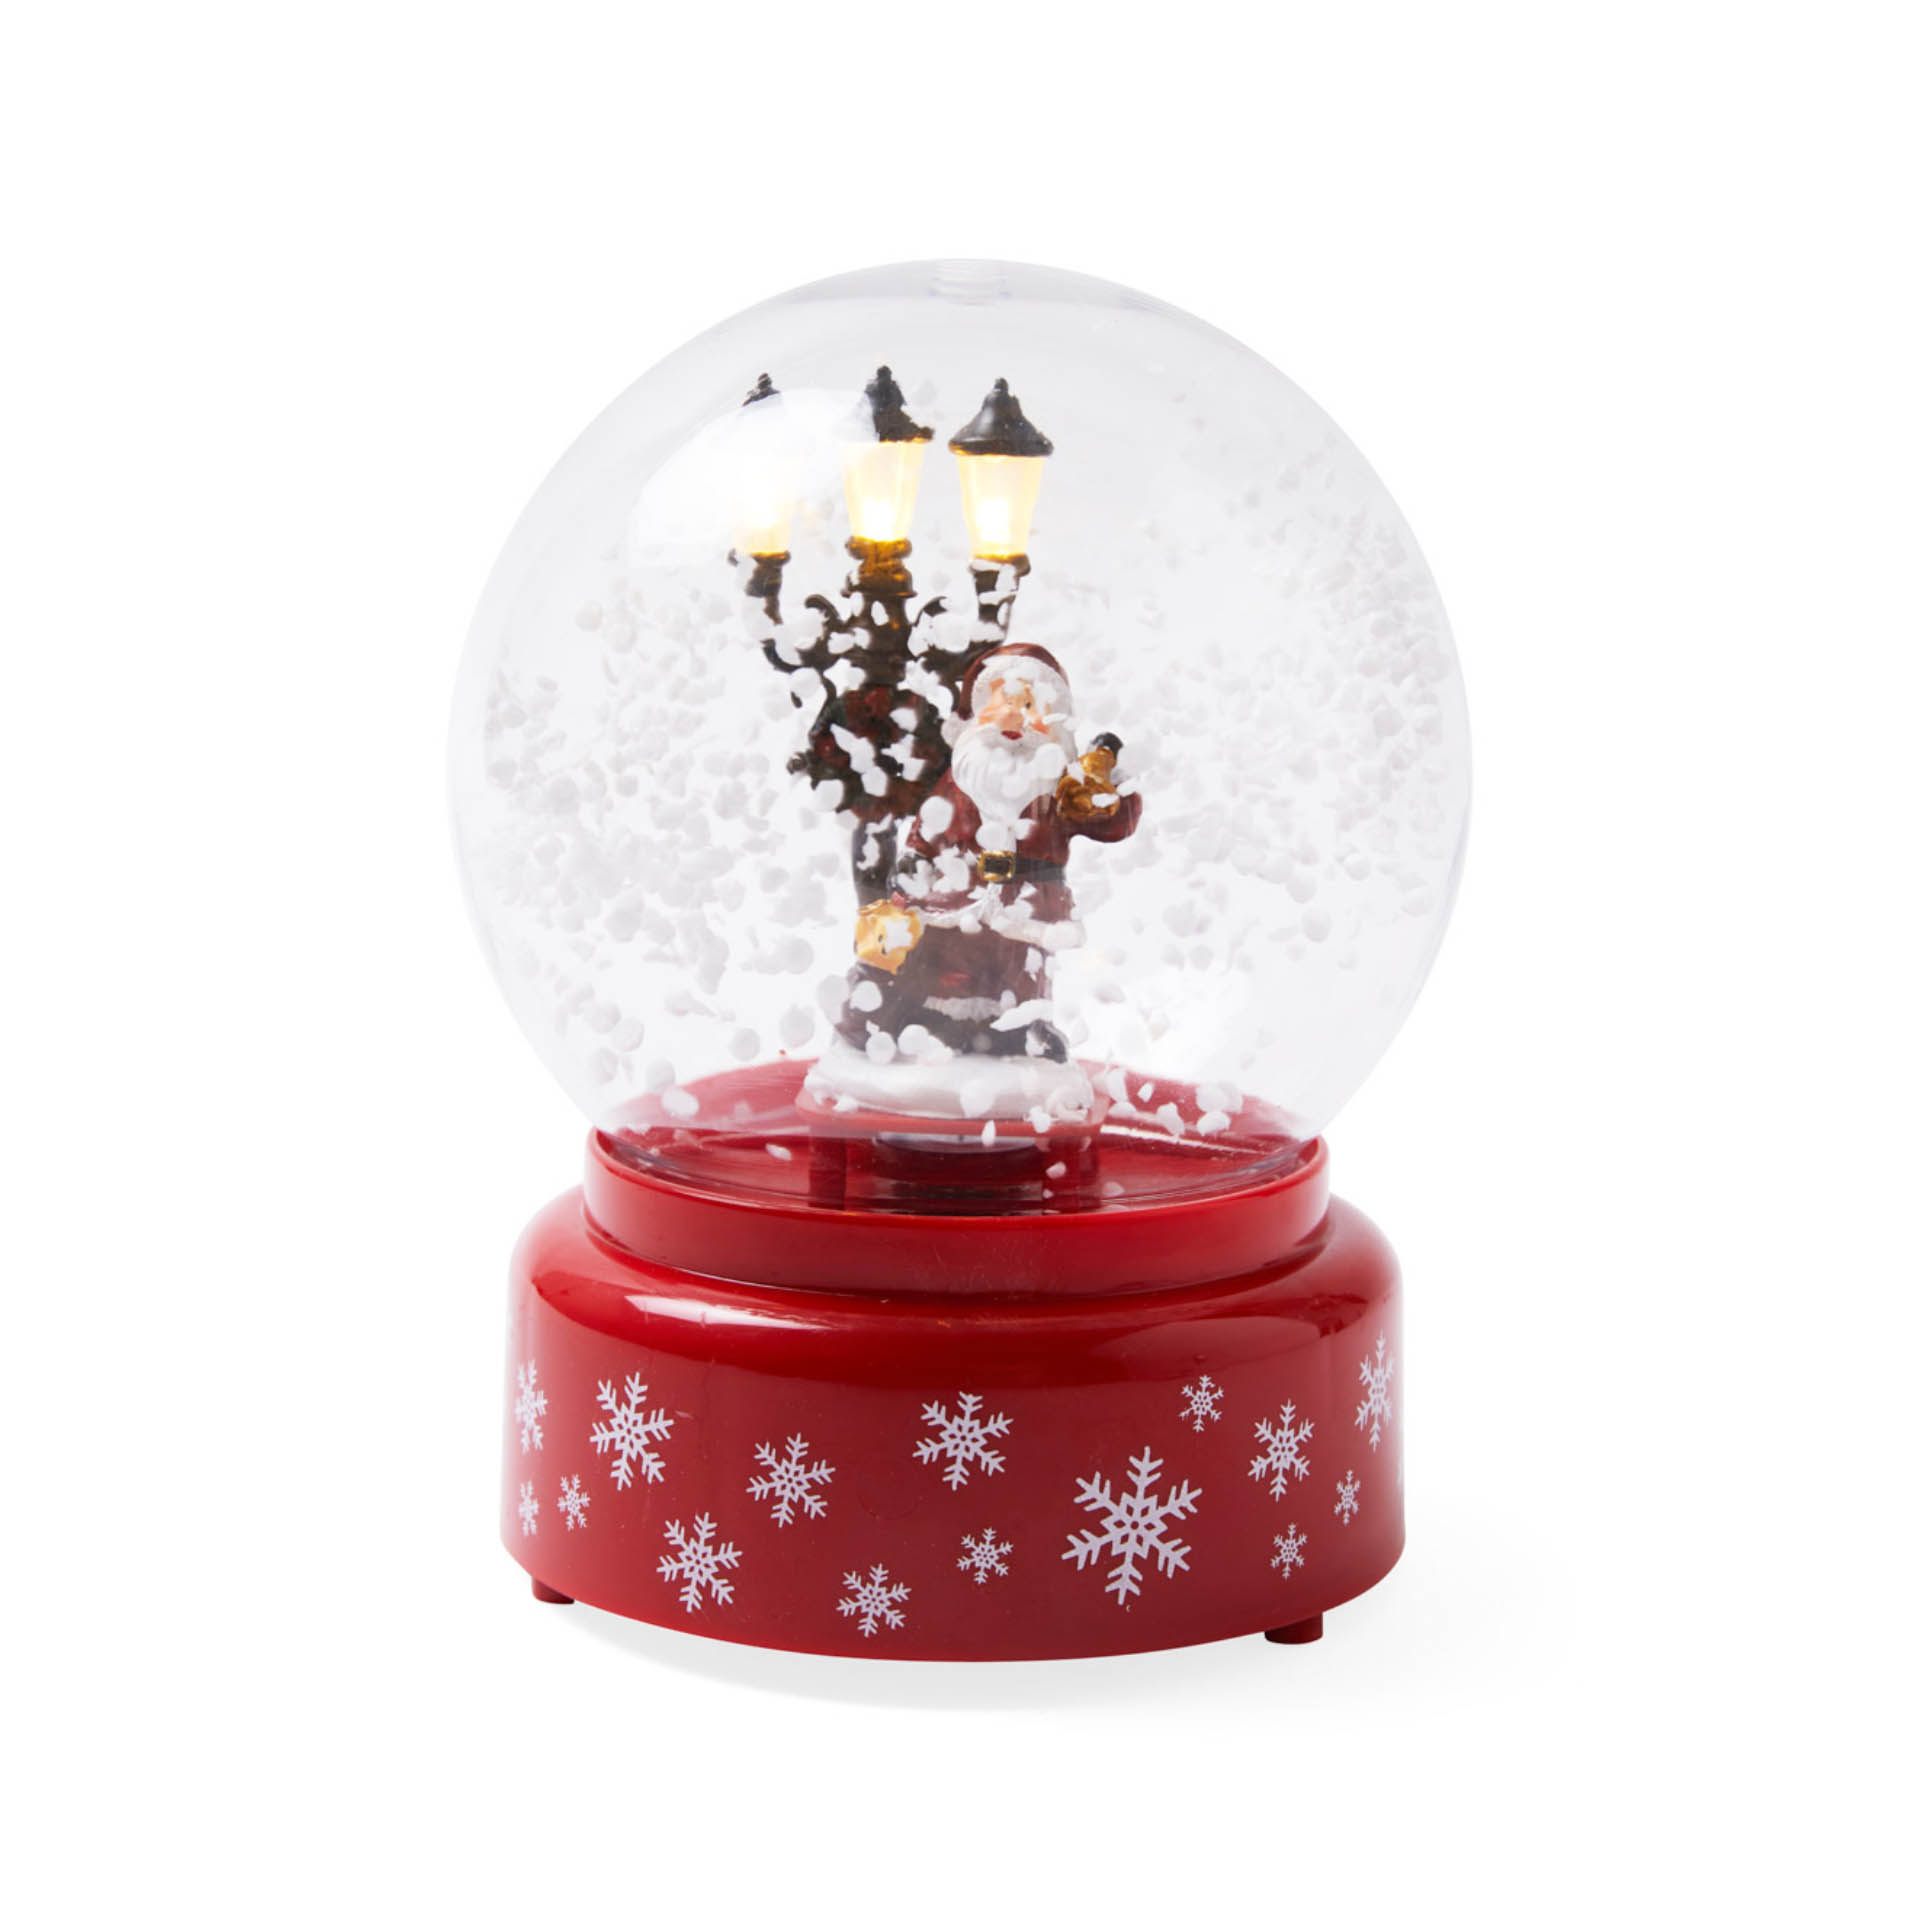 Palla di neve con luci e musica -  Babbo Natale, , large